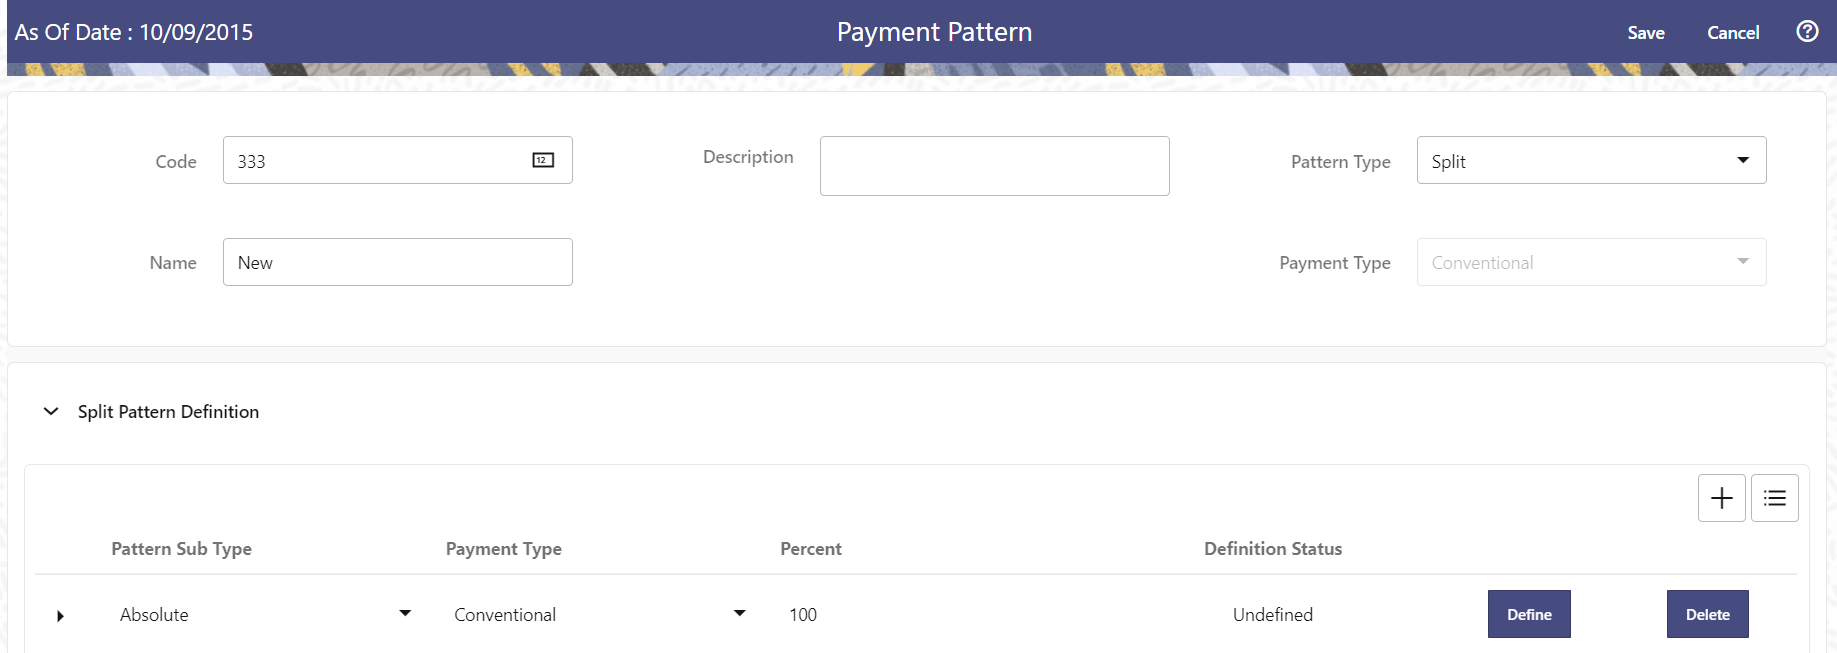 Split Payment Patterns